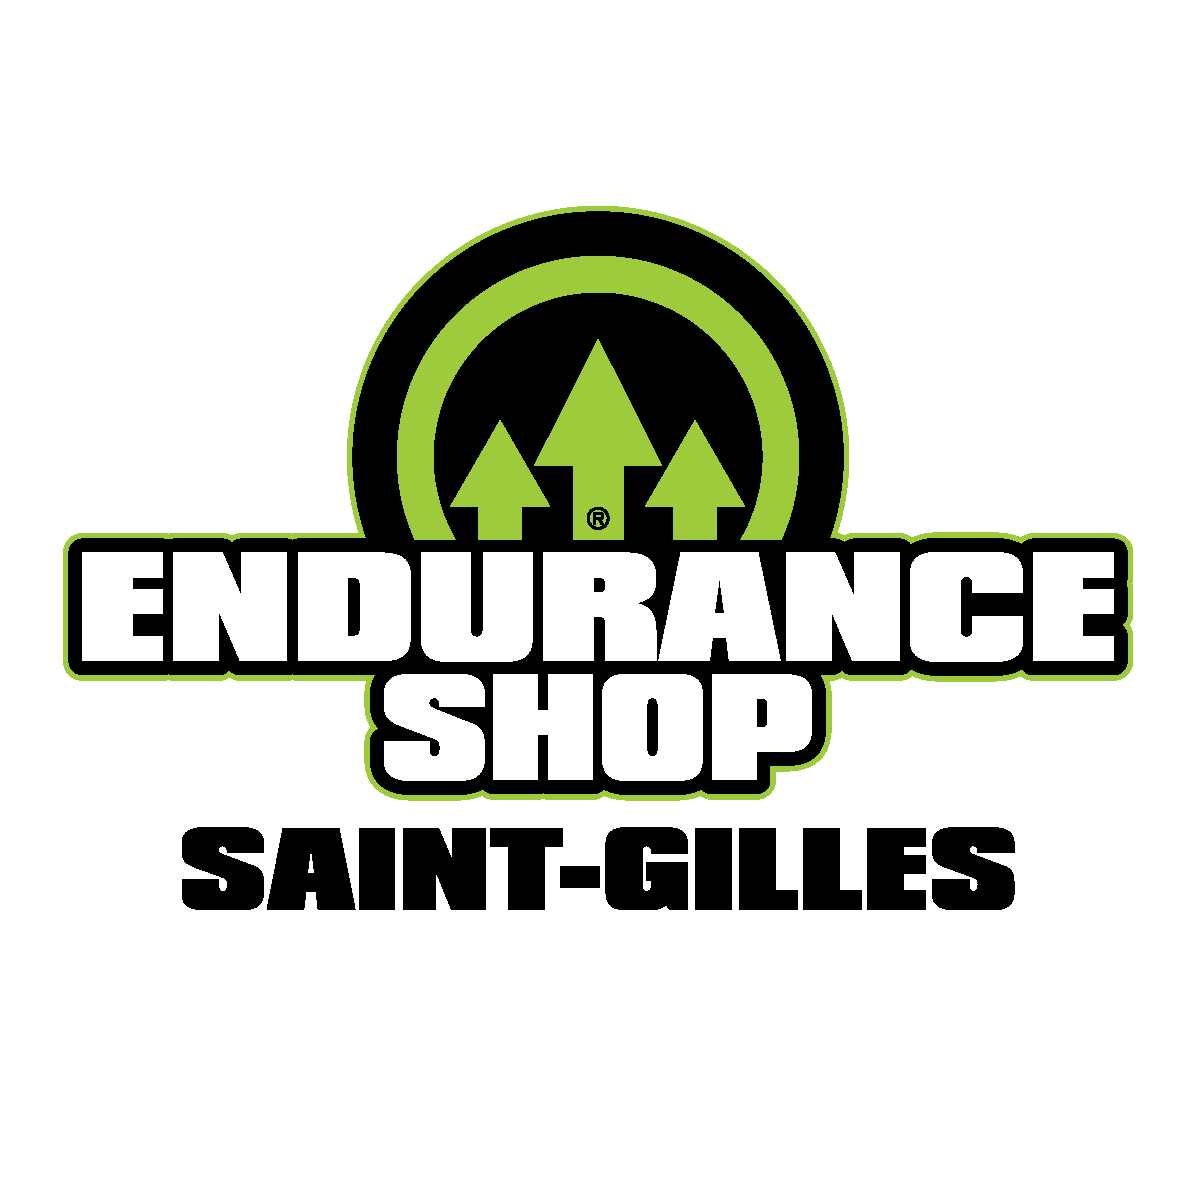 Endurance Shop Saint Gilles